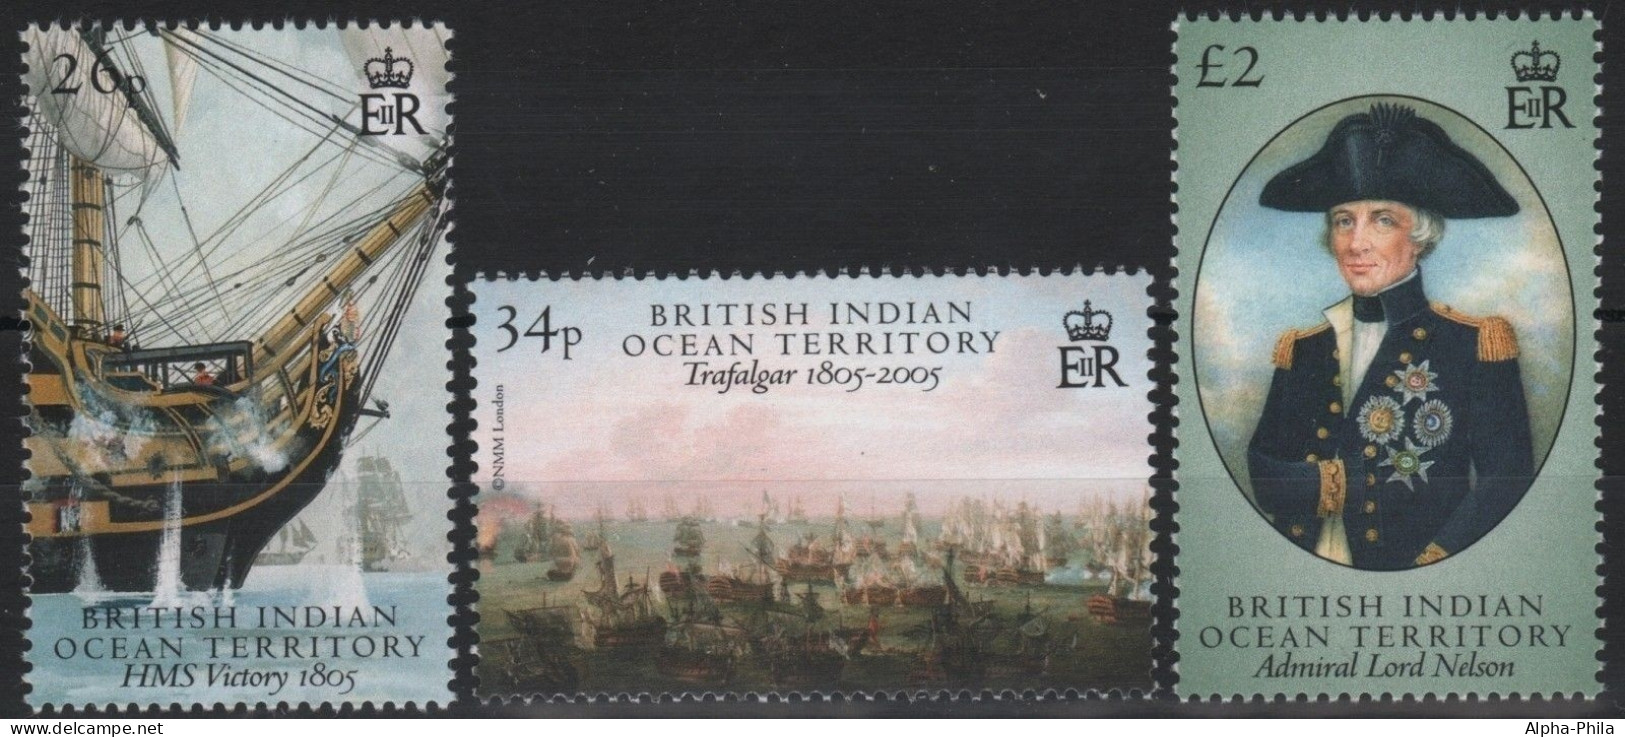 BIOT 2005 - Mi-Nr. 389-391 ** - MNH - Schiffe / Ships - Territorio Britannico Dell'Oceano Indiano